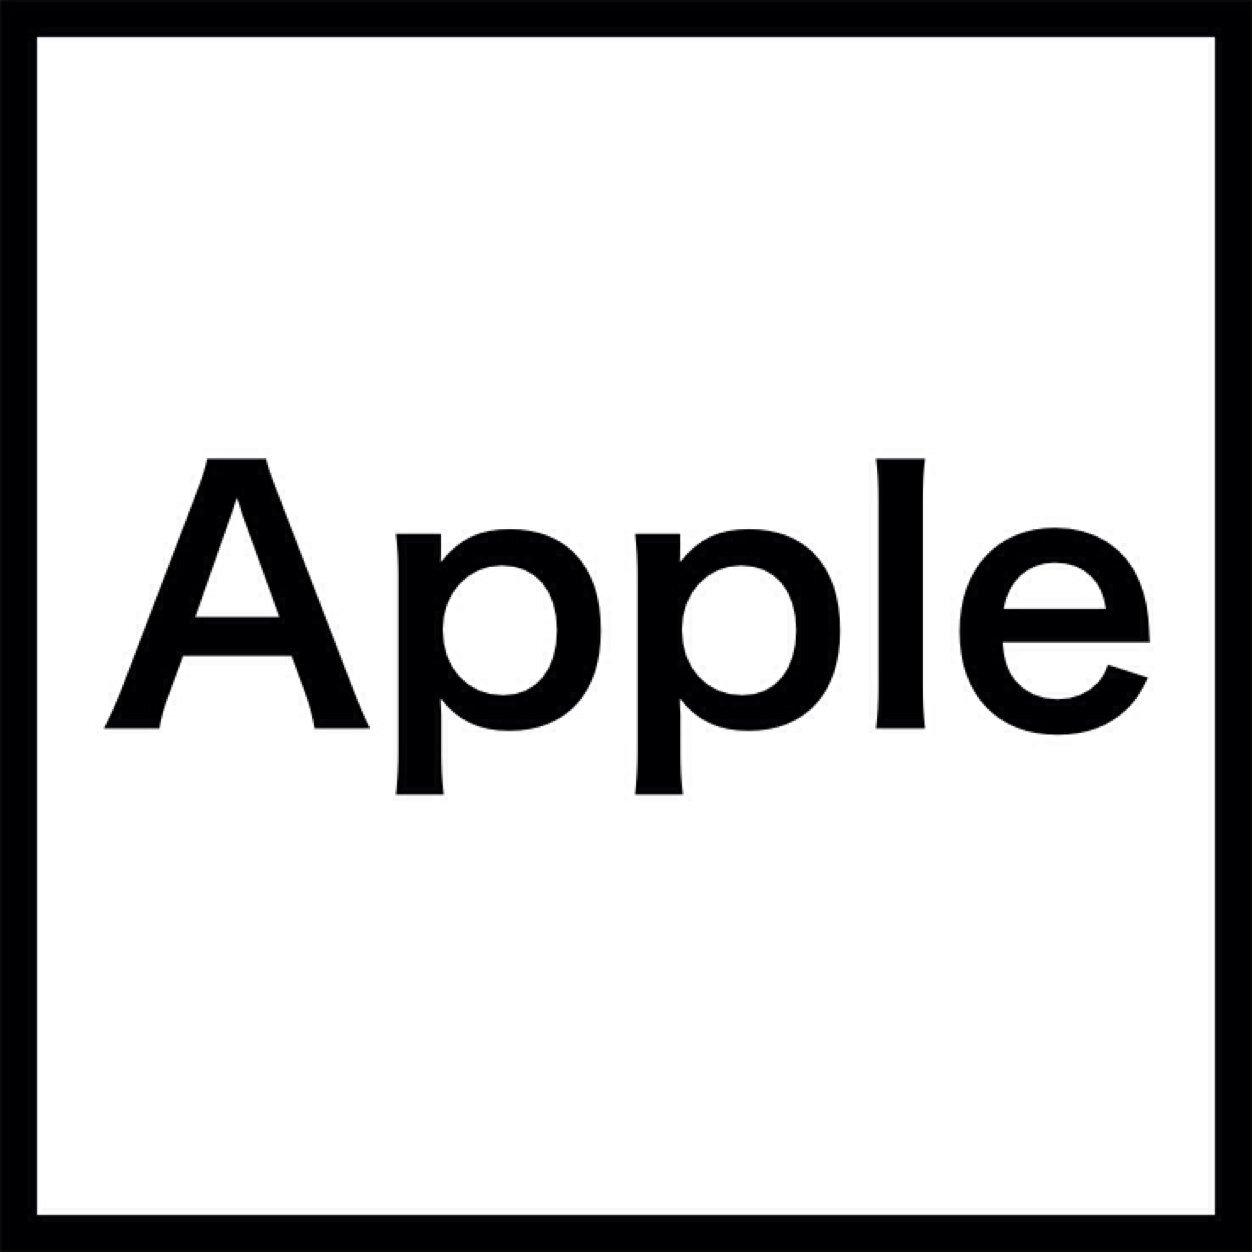 iPhone・iPad・iPod・MacなどApple製品の最新情報をまとめてお届け。アプリやカバー、ケースなど。最新情報を24時間365日速報で配信中。